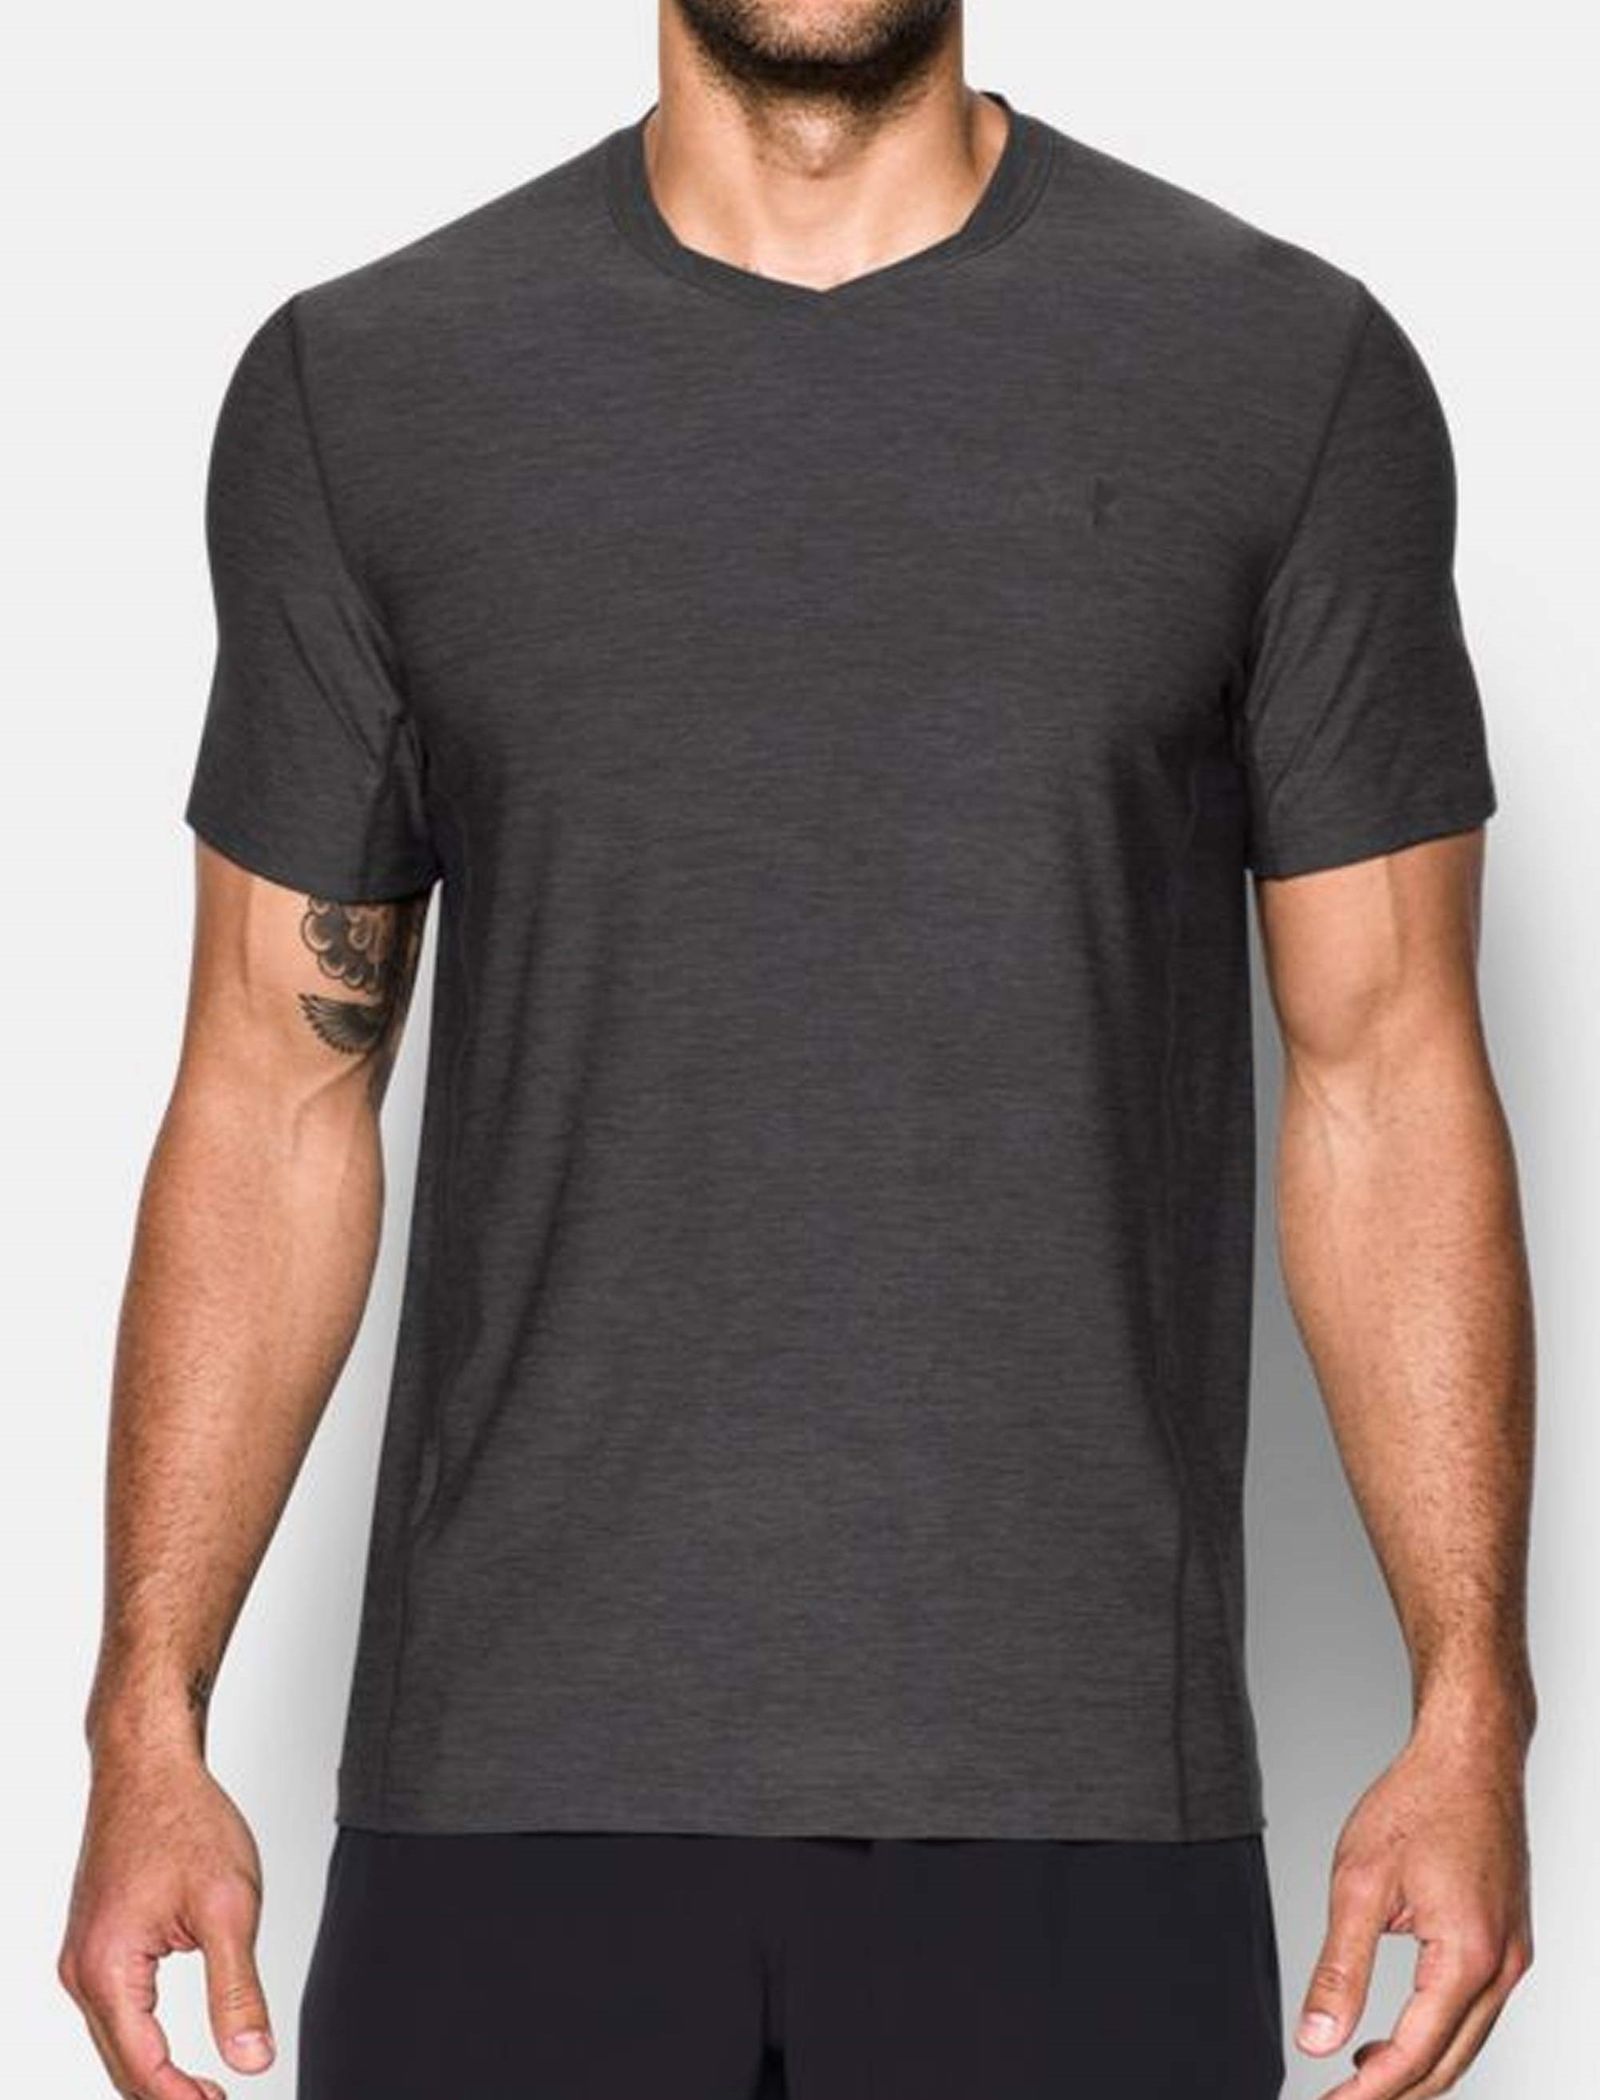 تی شرت ورزشی آستین کوتاه مردانه - آندر آرمور - طوسي - 3